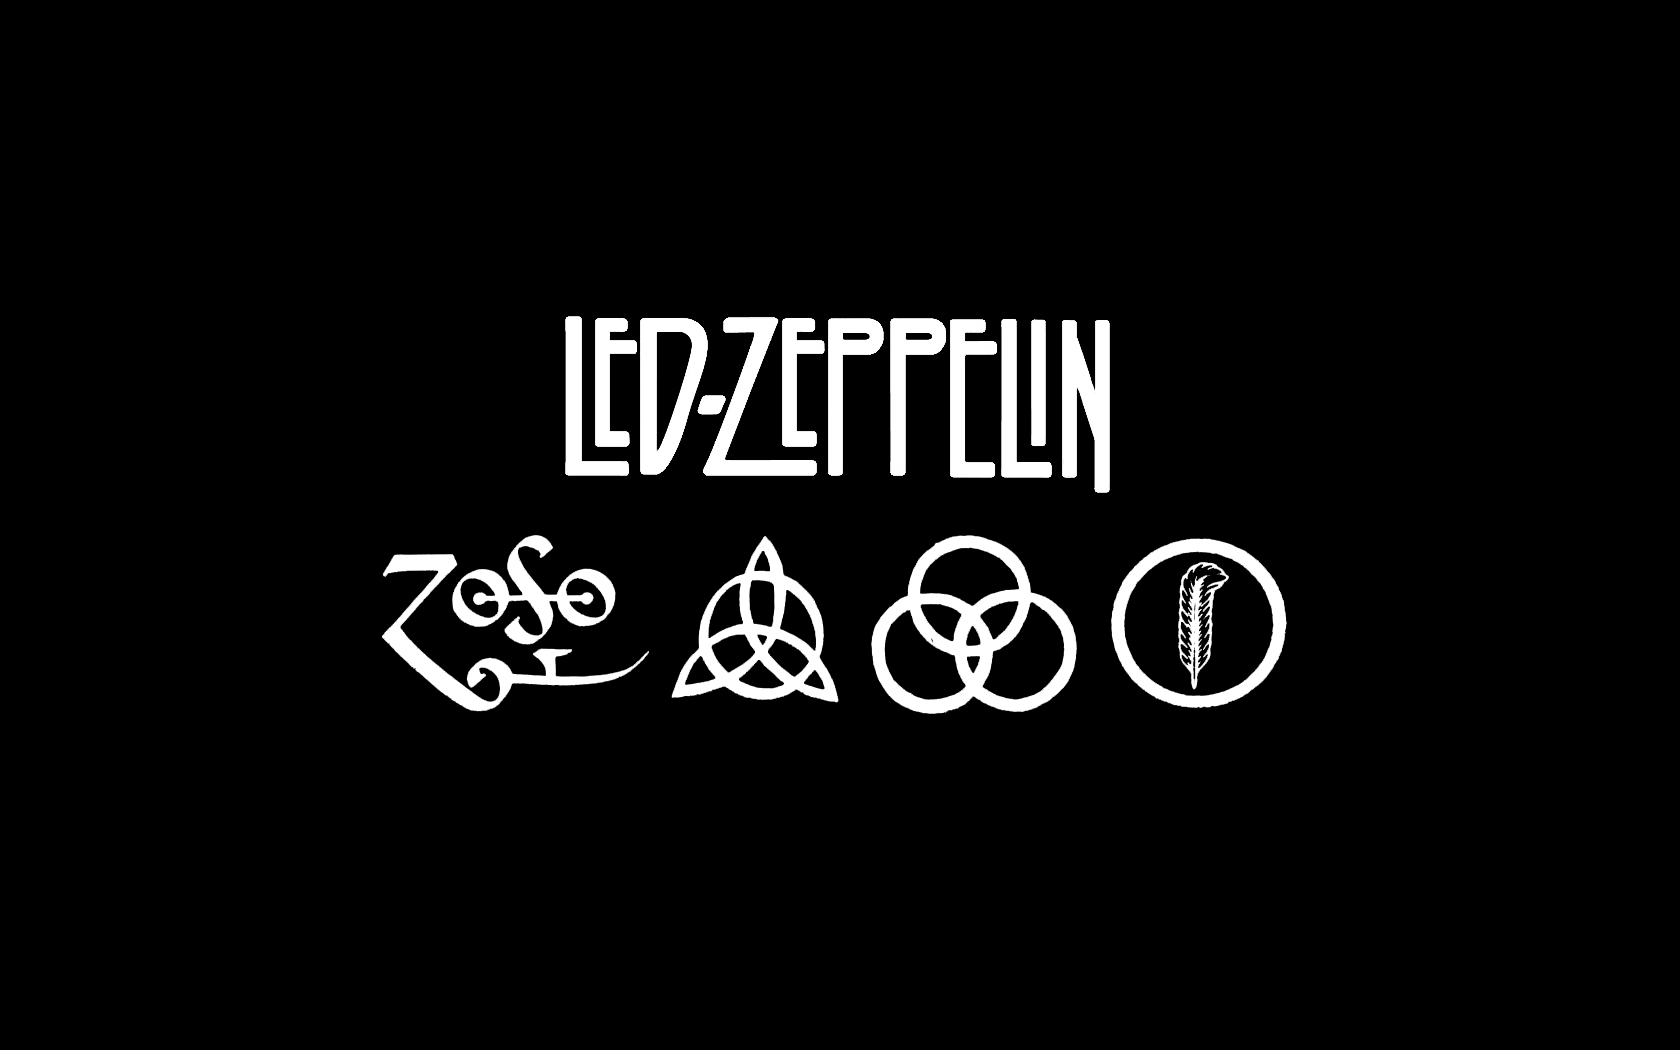 Tags Hard Rock Led Zeppelin Wallpaper